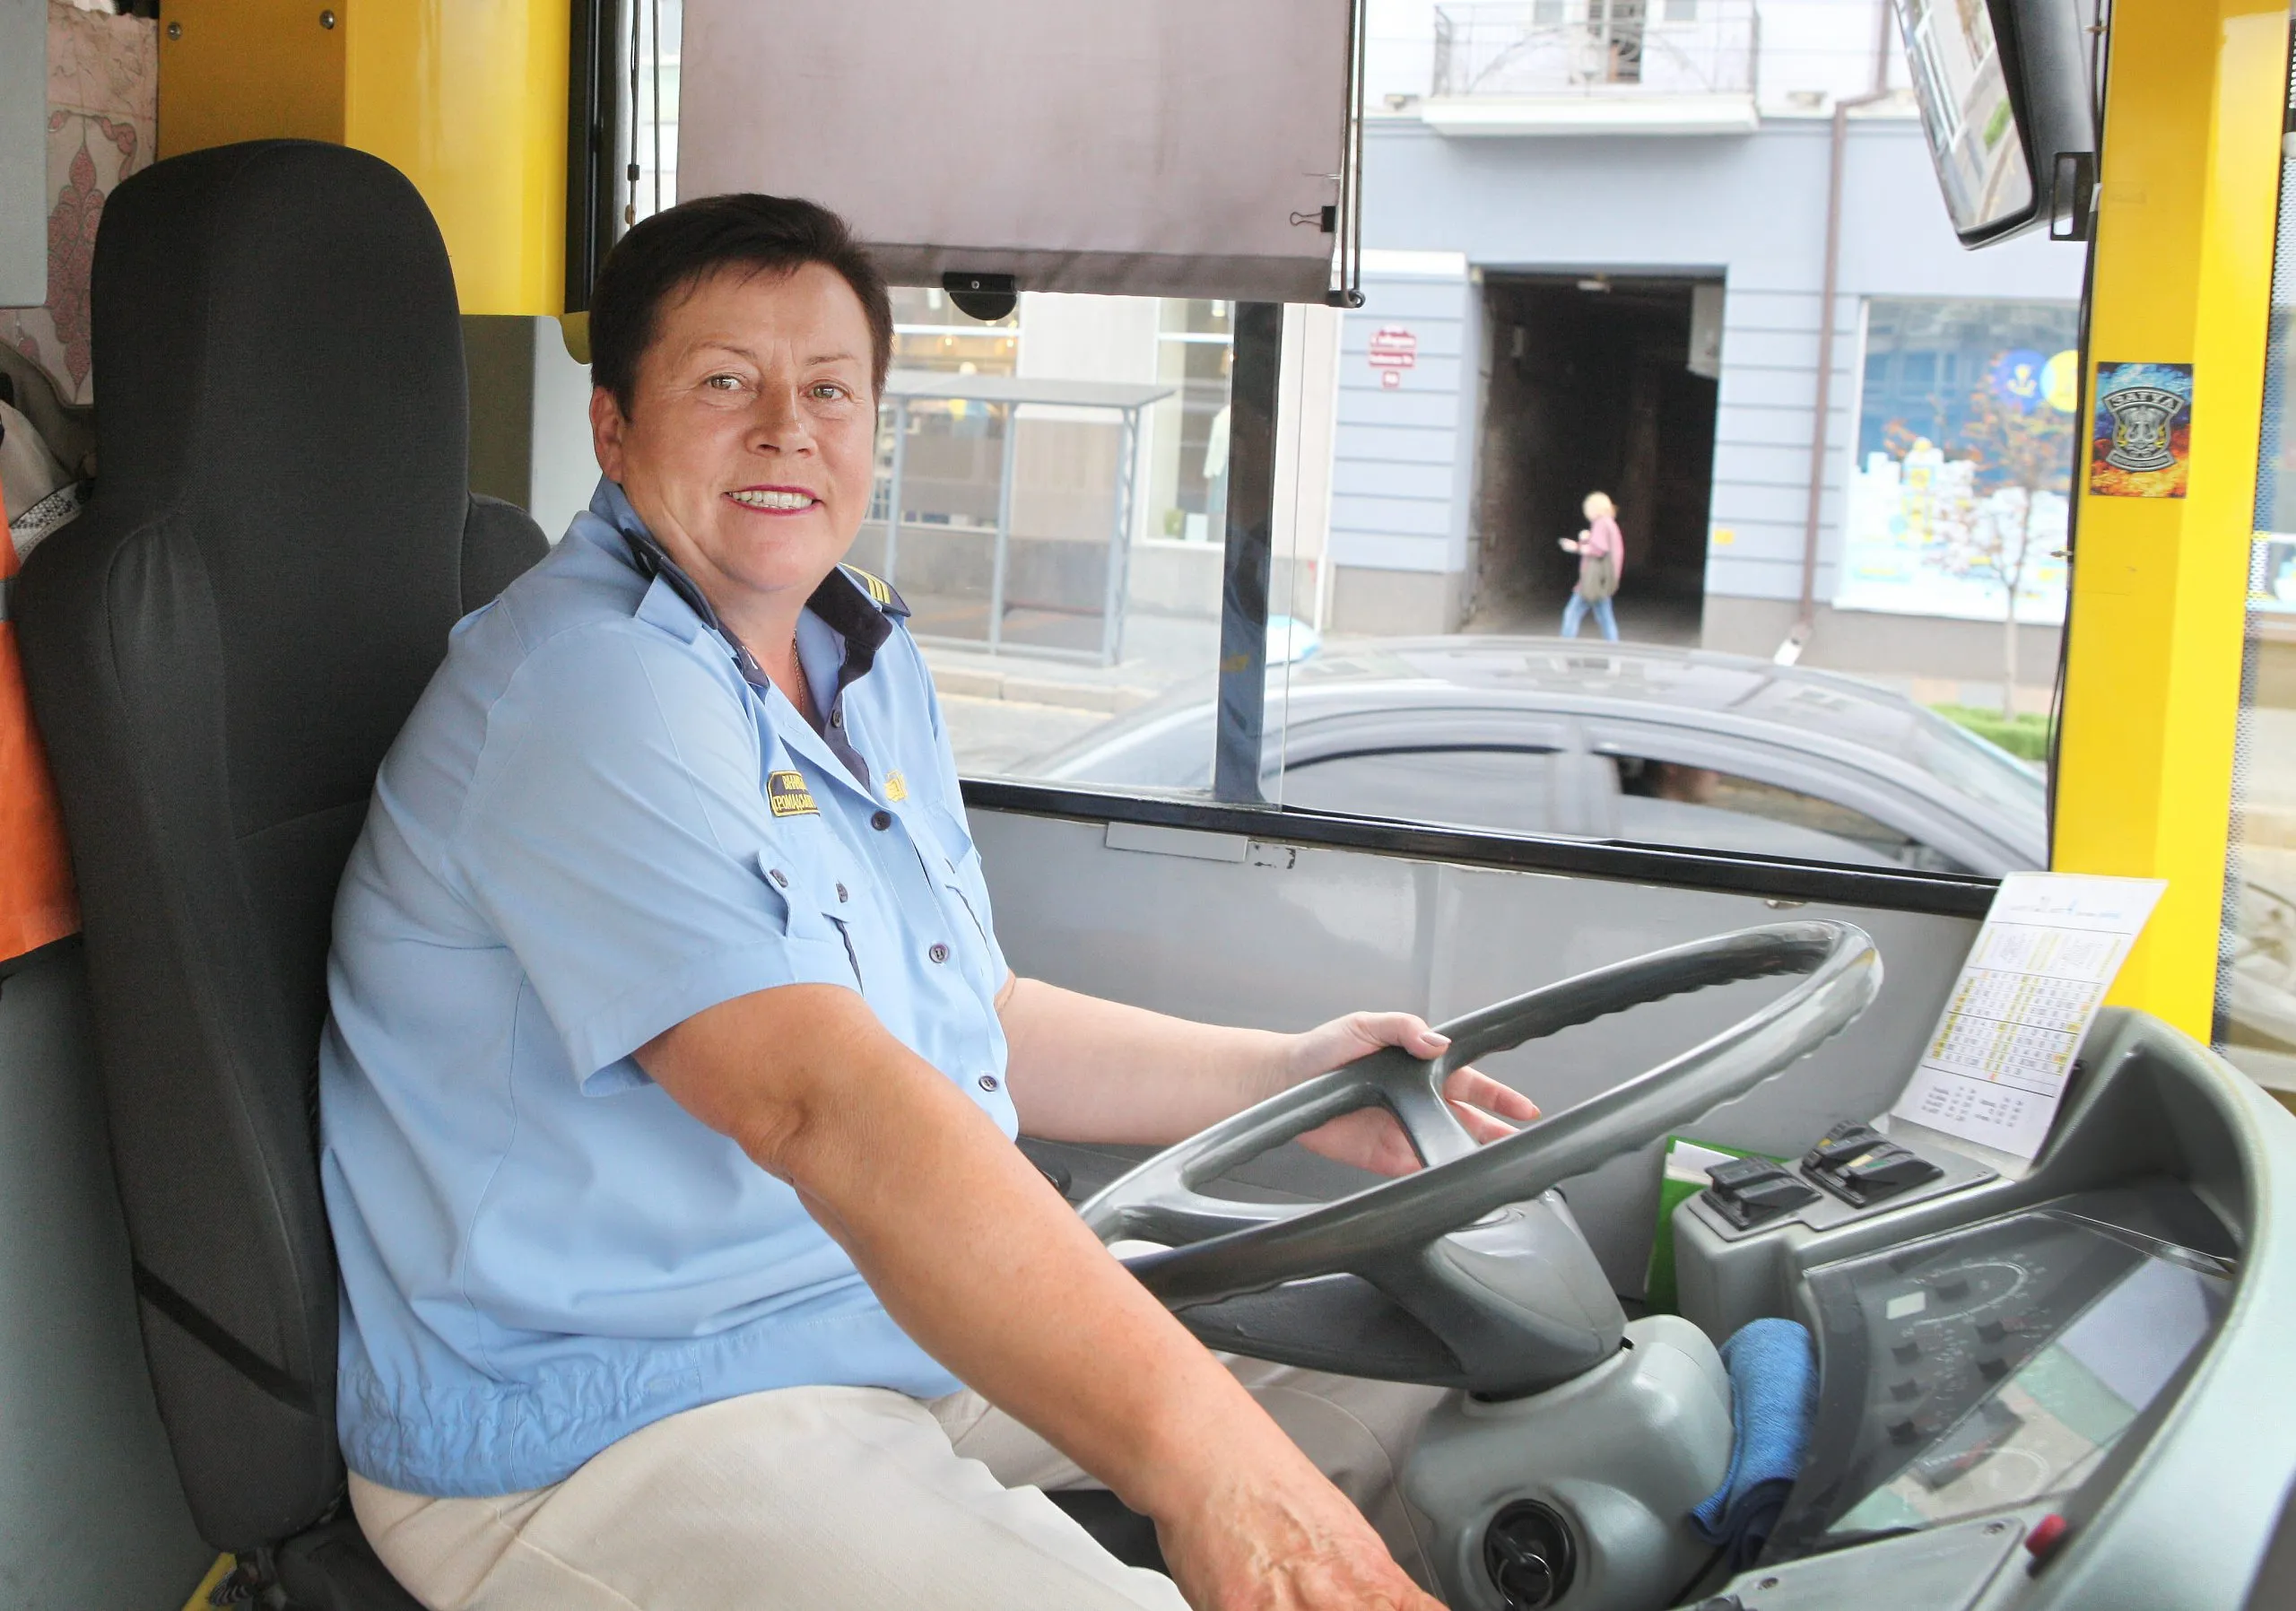 «Наша робота – залишатися людьми»: водійка вінницького автобуса про загублені речі  та радість від гарних вчинків ВМР